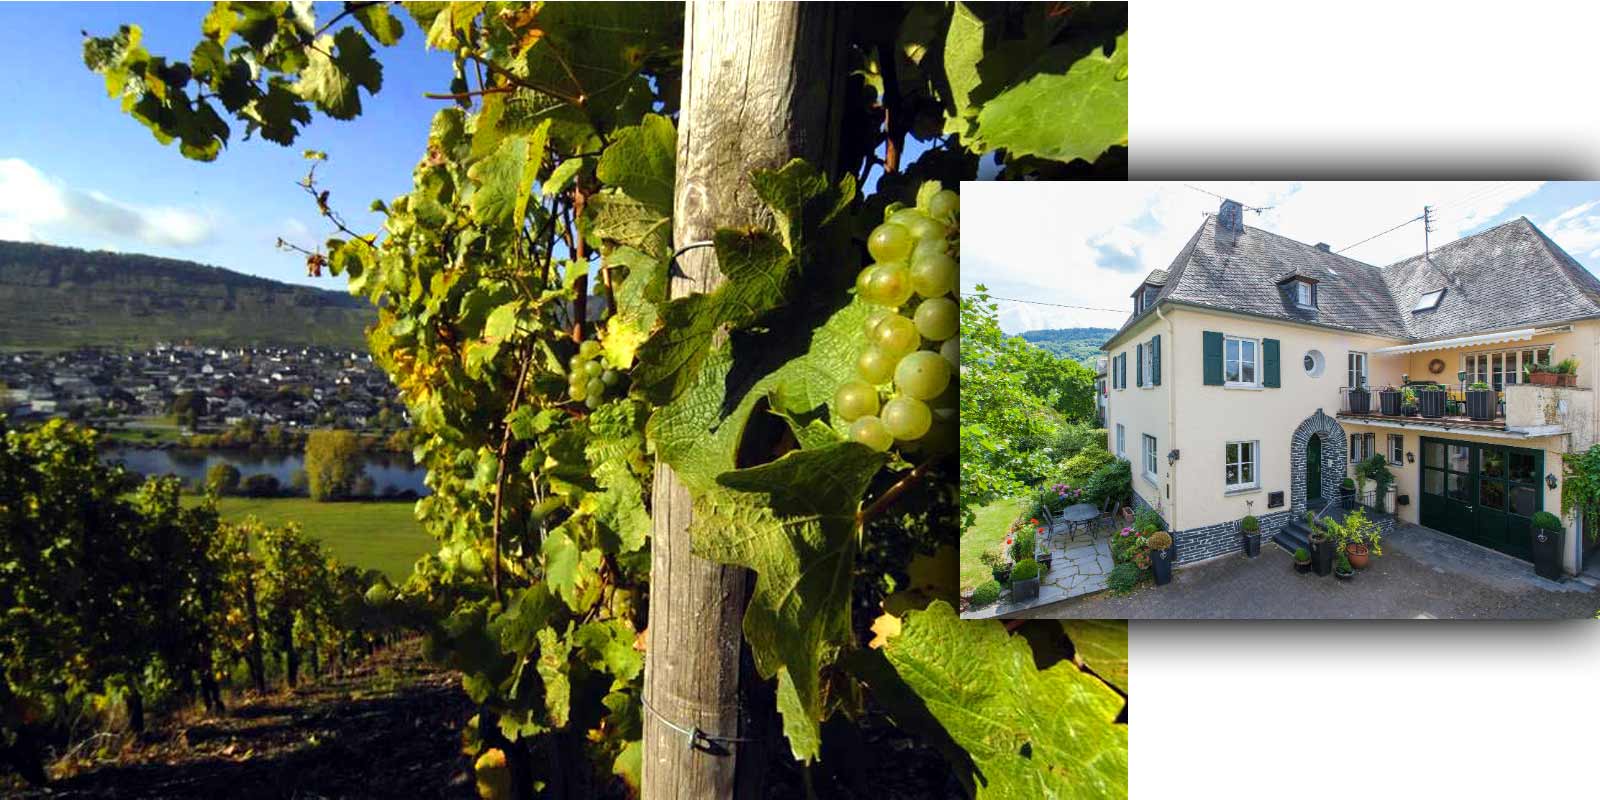 Kilang wain Grans-Fassian - wilayah penanaman wain Moselle Gerhard Grans mengambil alih perniagaan penanaman wain daripada bapanya Matthias pada tahun 1982 dan mengembangkan kawasan ladang anggur seluas 4 hektar kepada 9.5 hektar hari ini. 88% daripadanya ditanam dengan Riesling, 10% Pinot Blanc dan 2% Pinot Gris. Lokasi terbaik kilang wain juga adalah lokasi terperingkat - ia diklasifikasikan dalam kategori penanaman tertinggi.